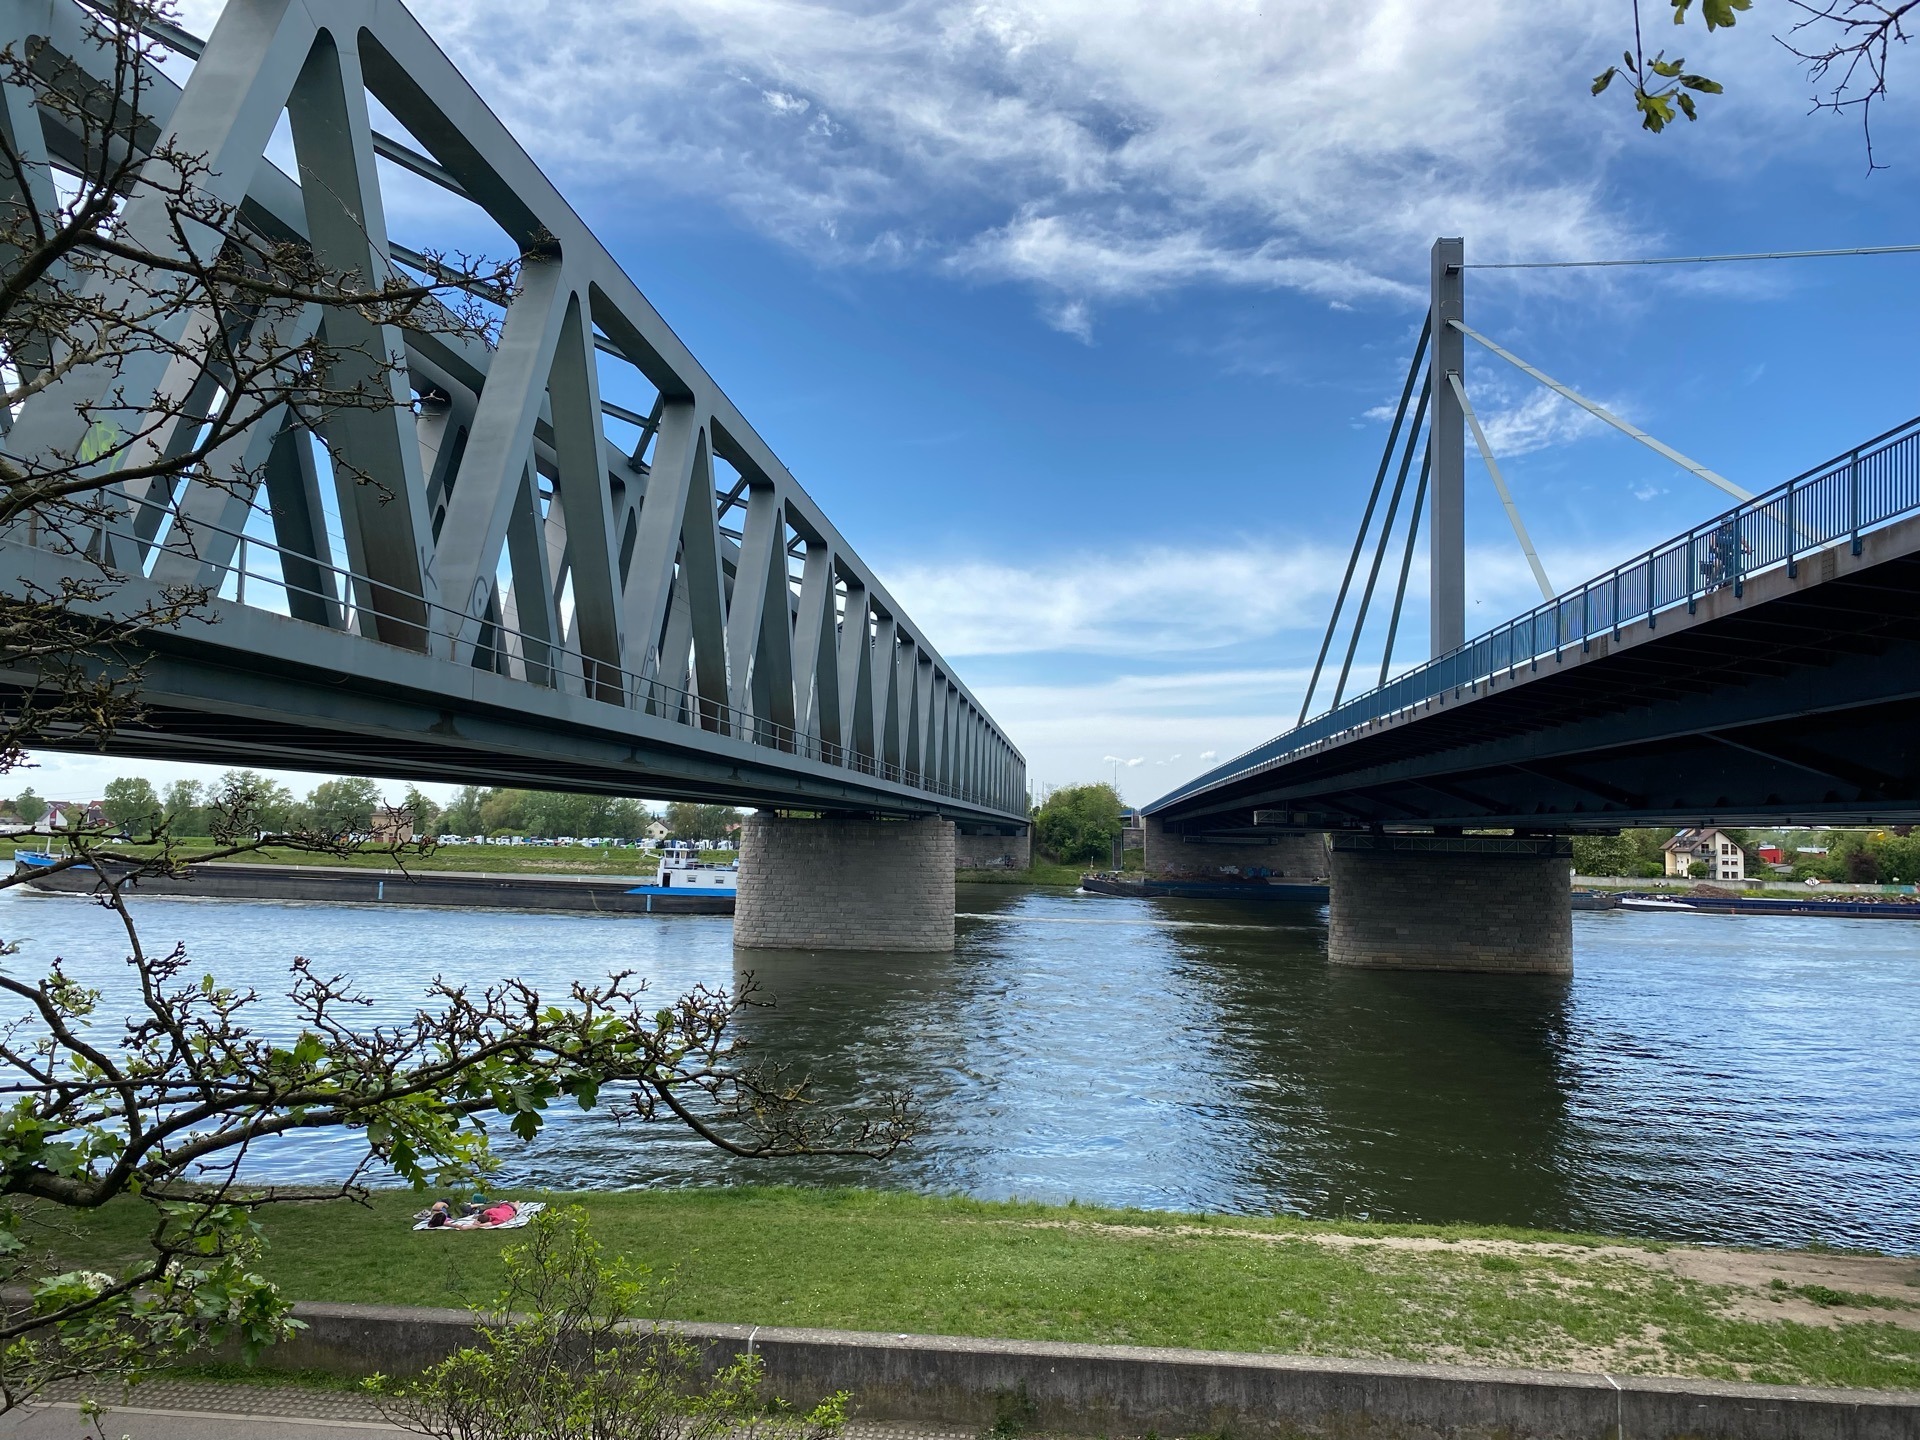 Blick auf den Rhein zwischen Rheinbrücke und Eisenbahnbrücke